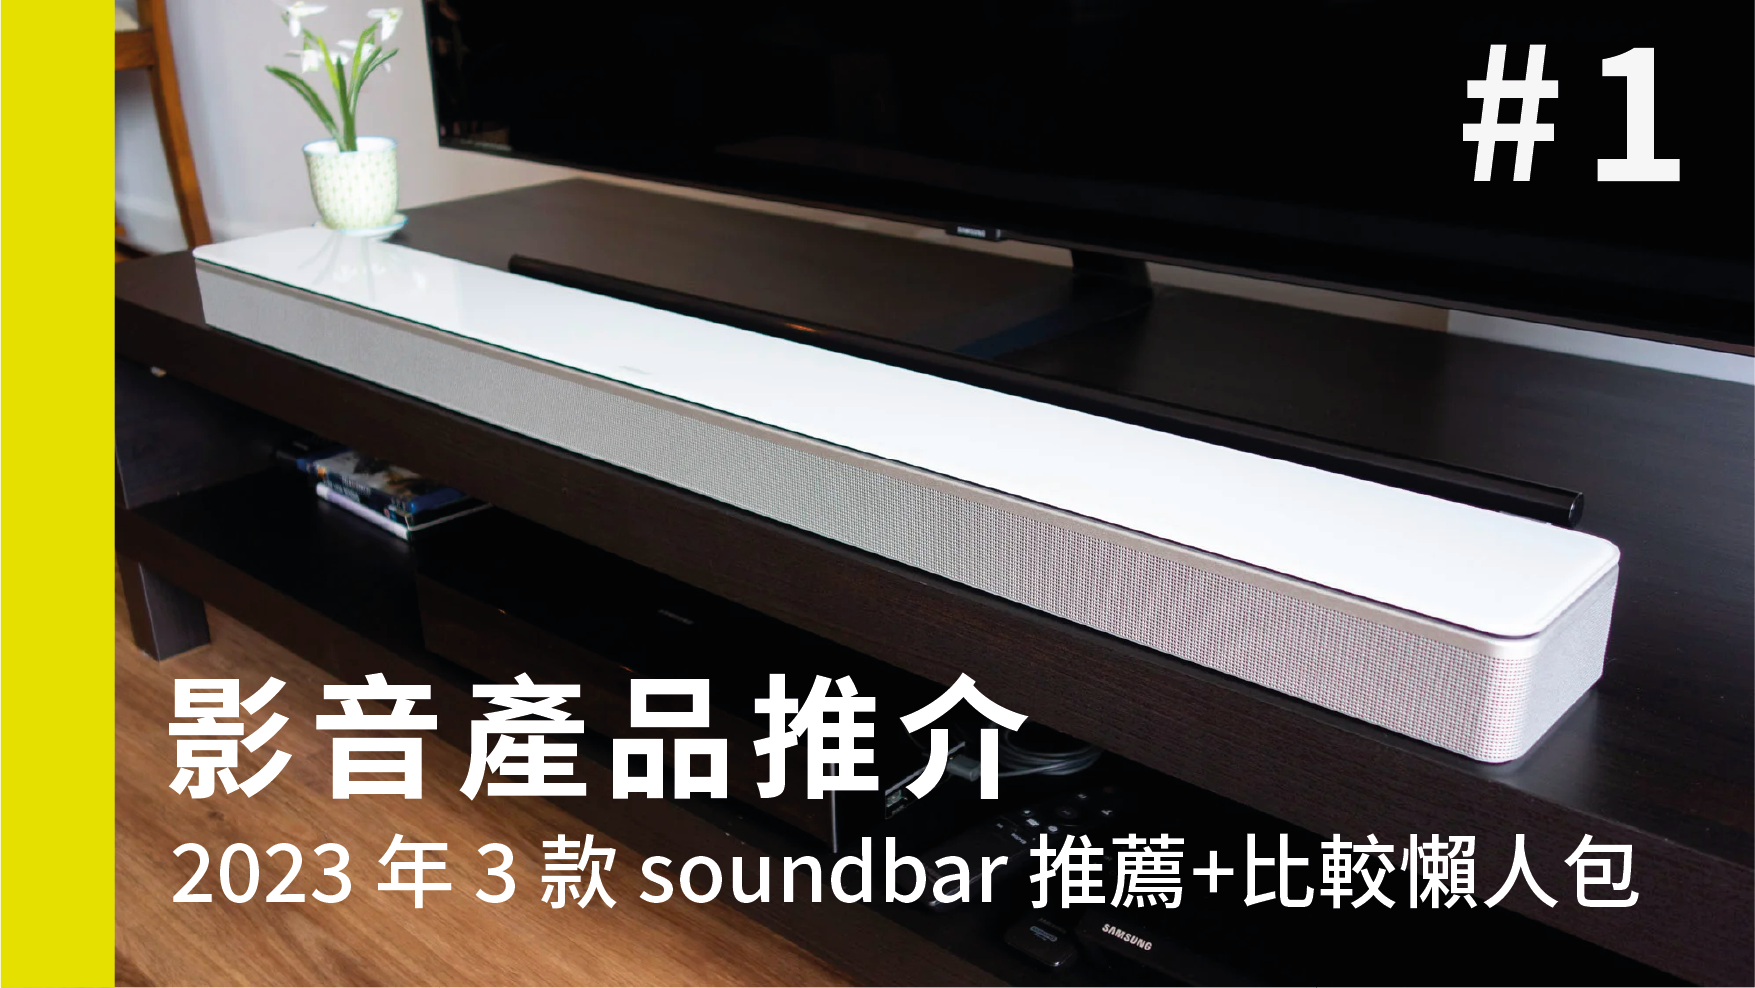 【影音產品推介】2023 年 3 款 soundbar 推薦 + 比較懶人包